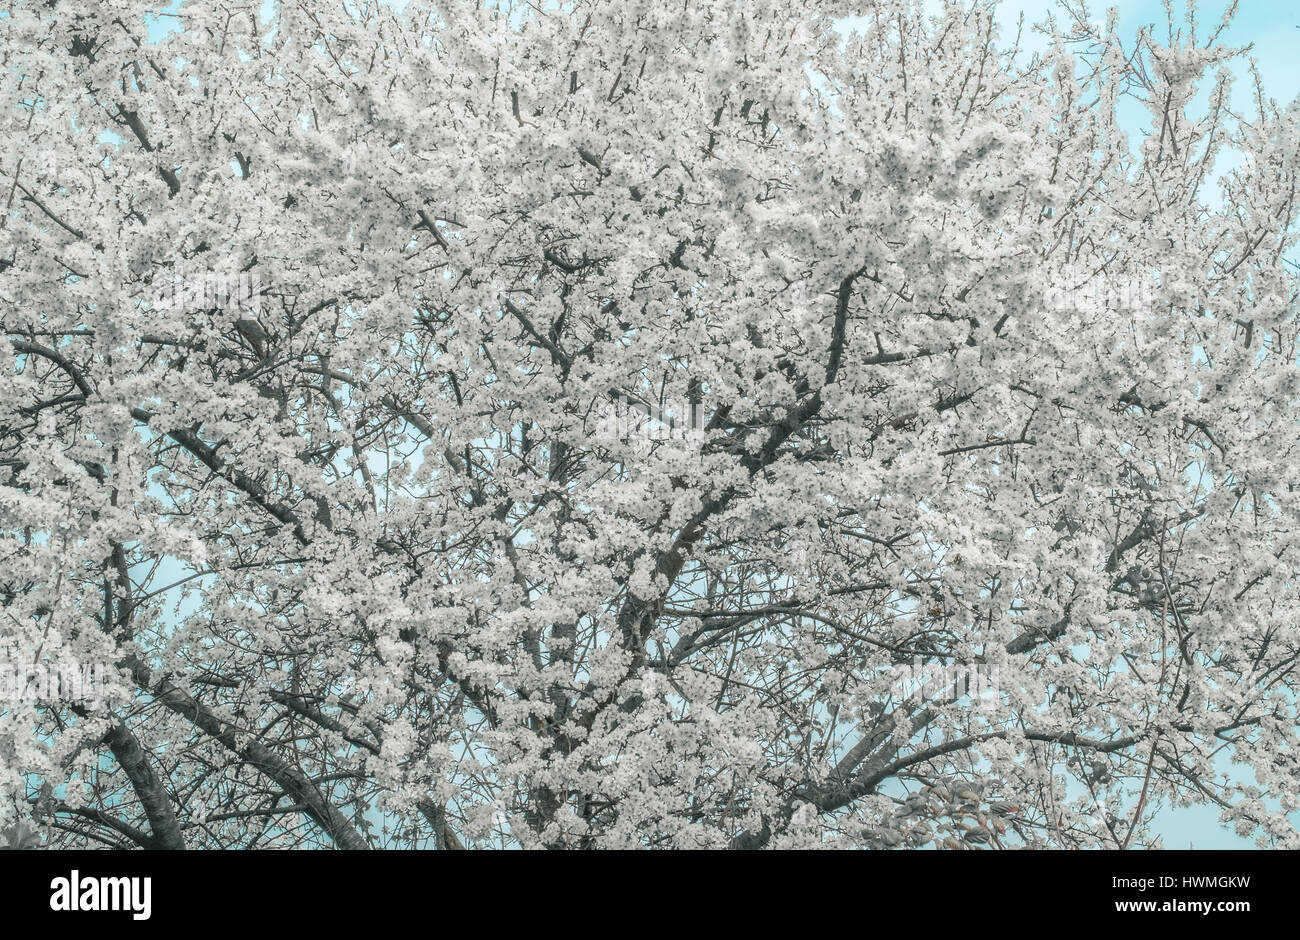 La vernal des branches d'arbre plein de fleurs blanches. Un signe tangible de l'arrivée du printemps. Banque D'Images